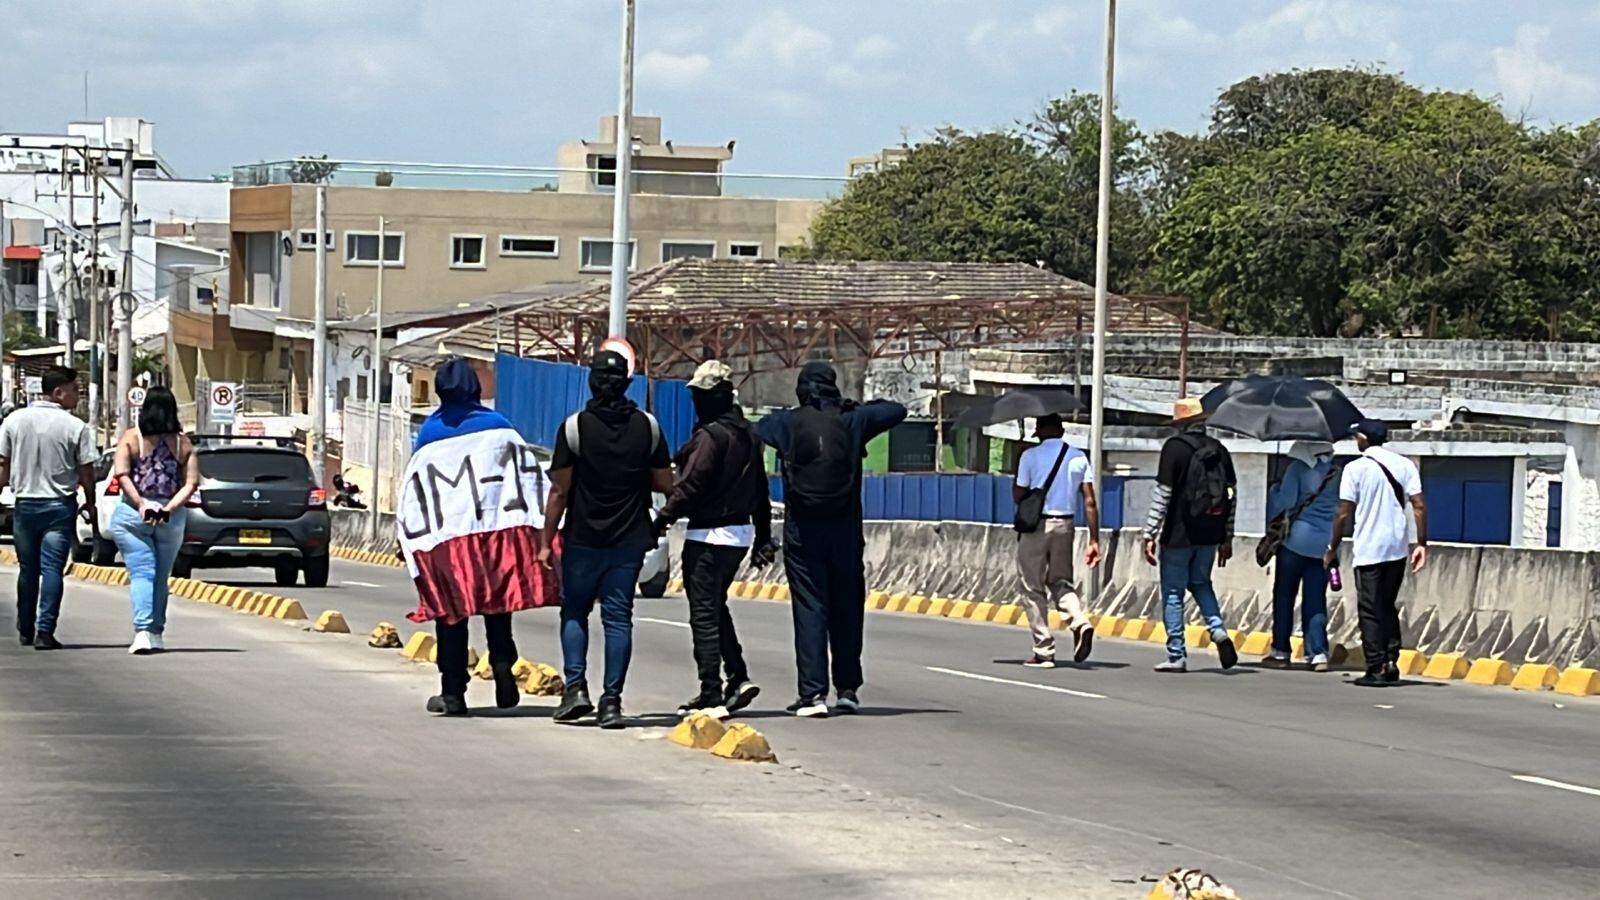 accidentado inicio de marcha a favor del gobierno petro en barranquilla: peleas a golpes entre manifestantes y ataques a la prensa